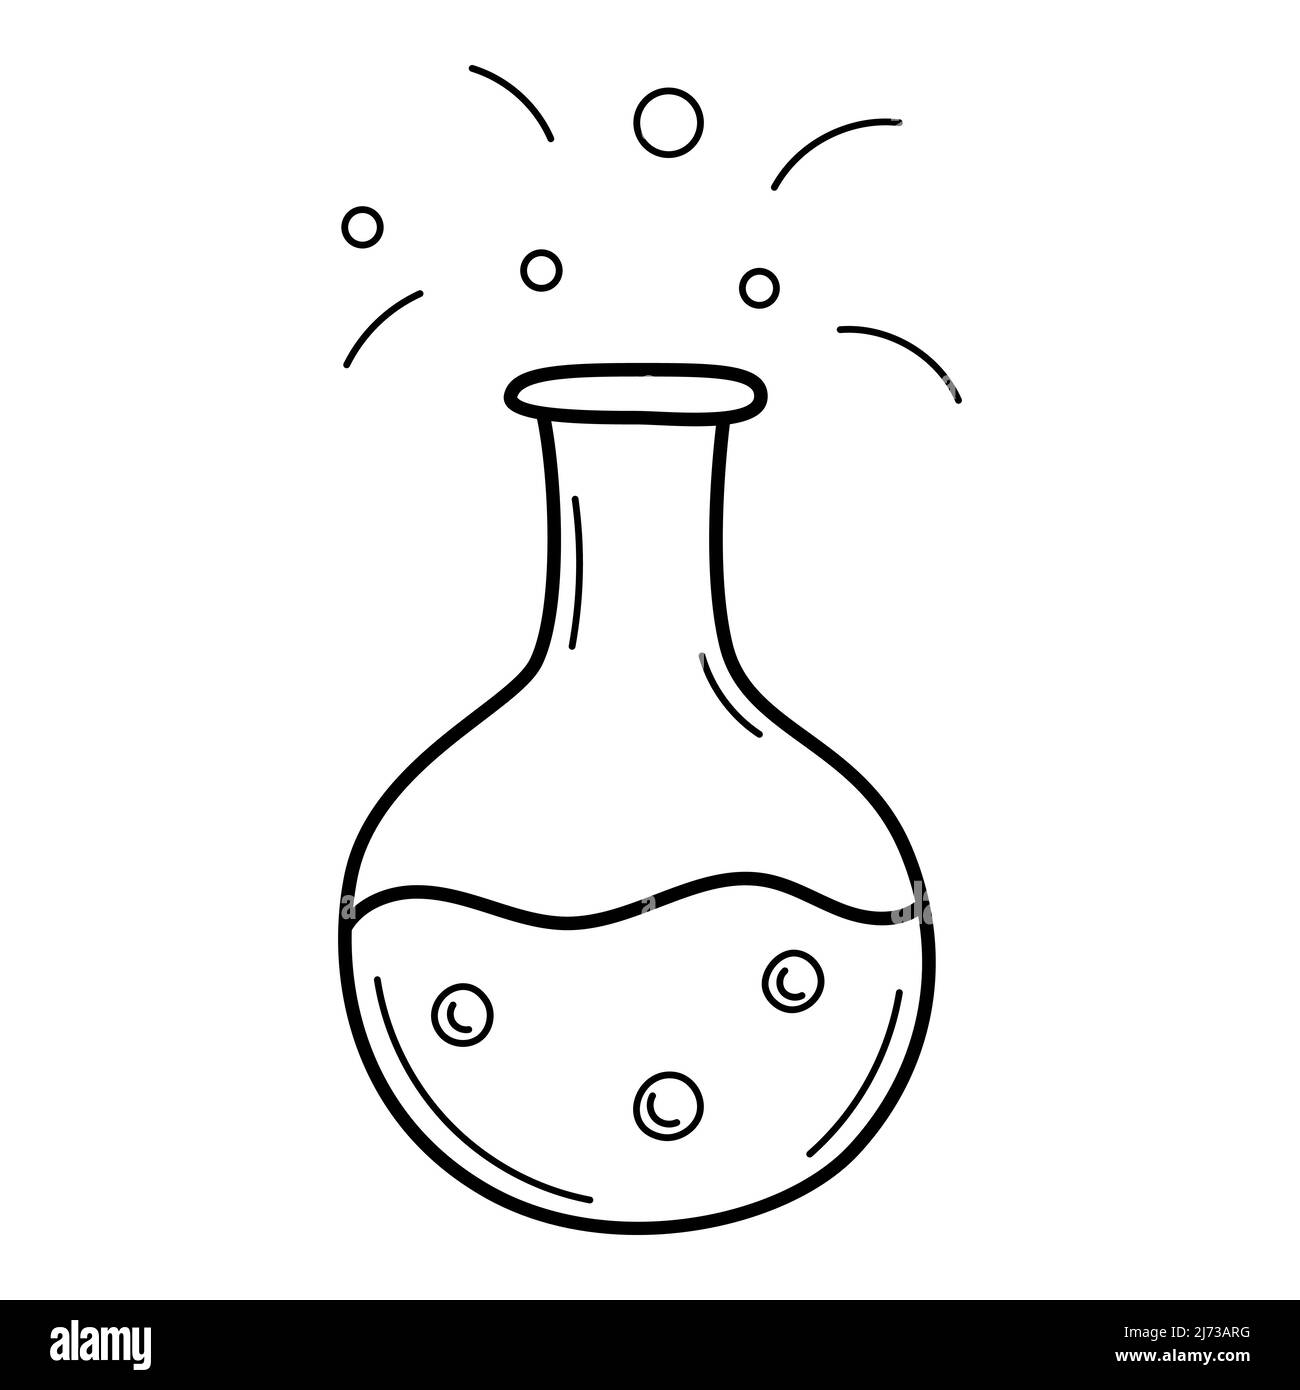 Ein rundes Reagenzglas mit einer Flüssigkeit. Chemische Ausrüstung. Doodle Outline-Stil. Handgezeichnete schwarz-weiße Vektorgrafik. Die Designelemente sind iso Stock Vektor